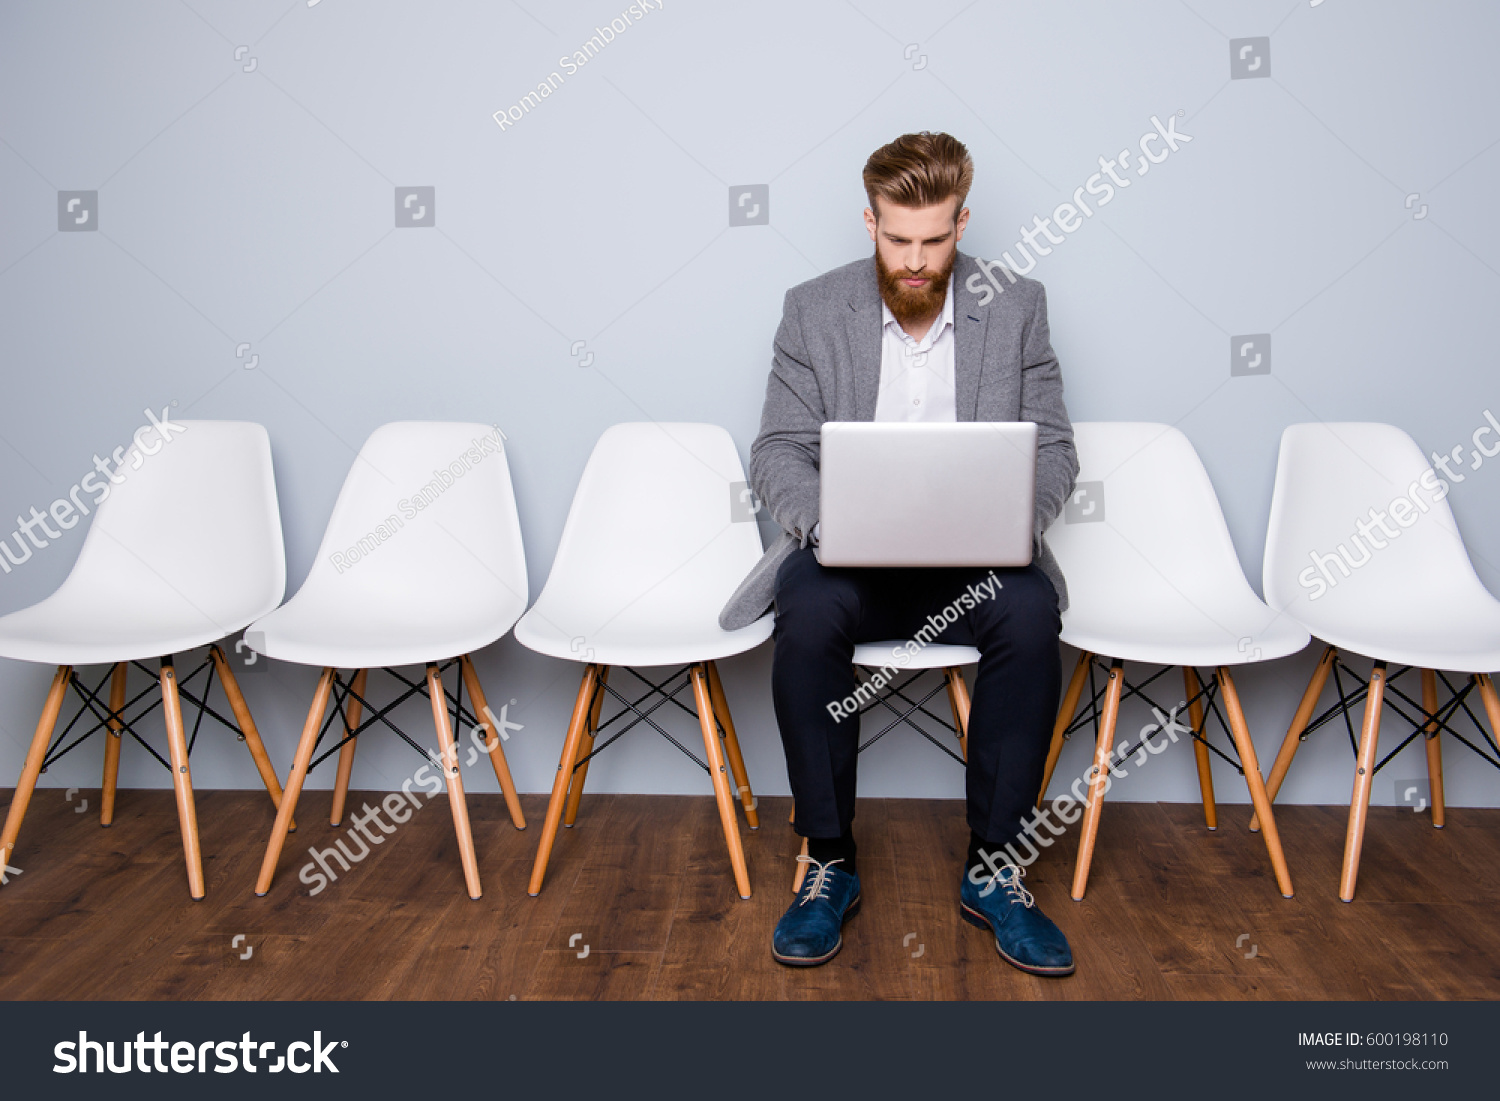 психологическая техника два стула